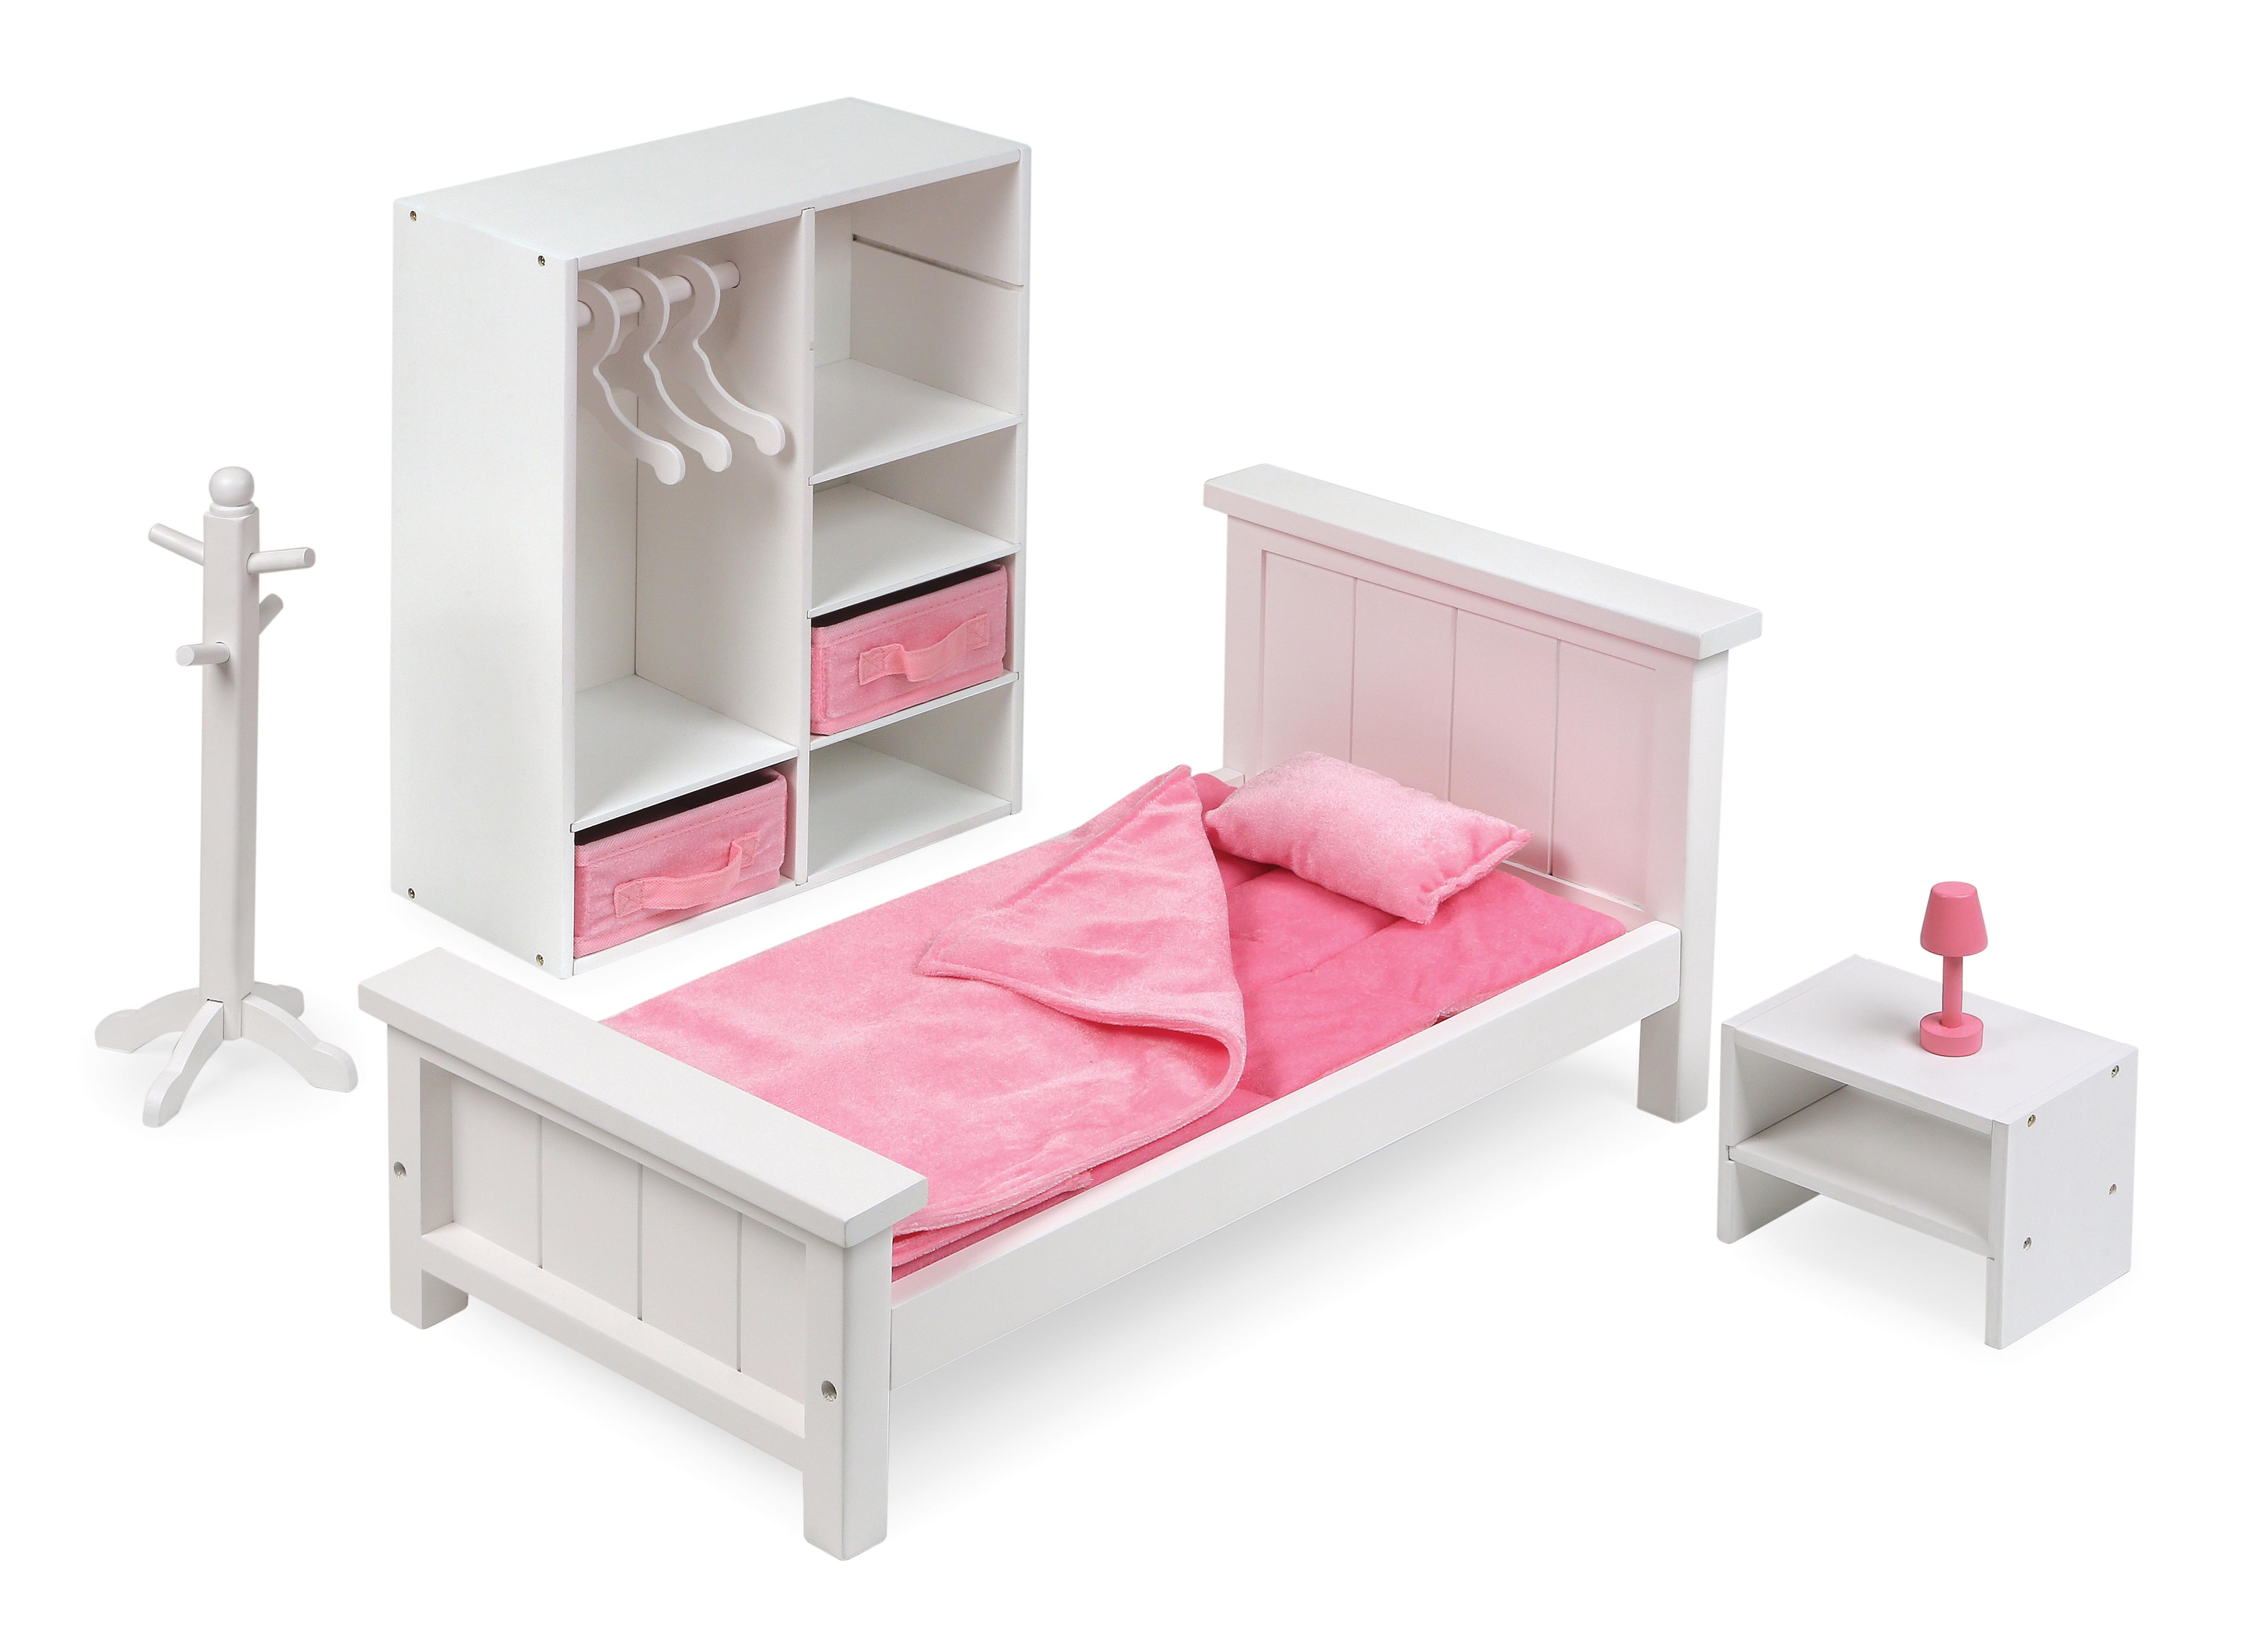 https://assets.wfcdn.com/im/69580451/compr-r85/1160/116065743/bedroom-furniture-set-for-18-inch-dolls.jpg